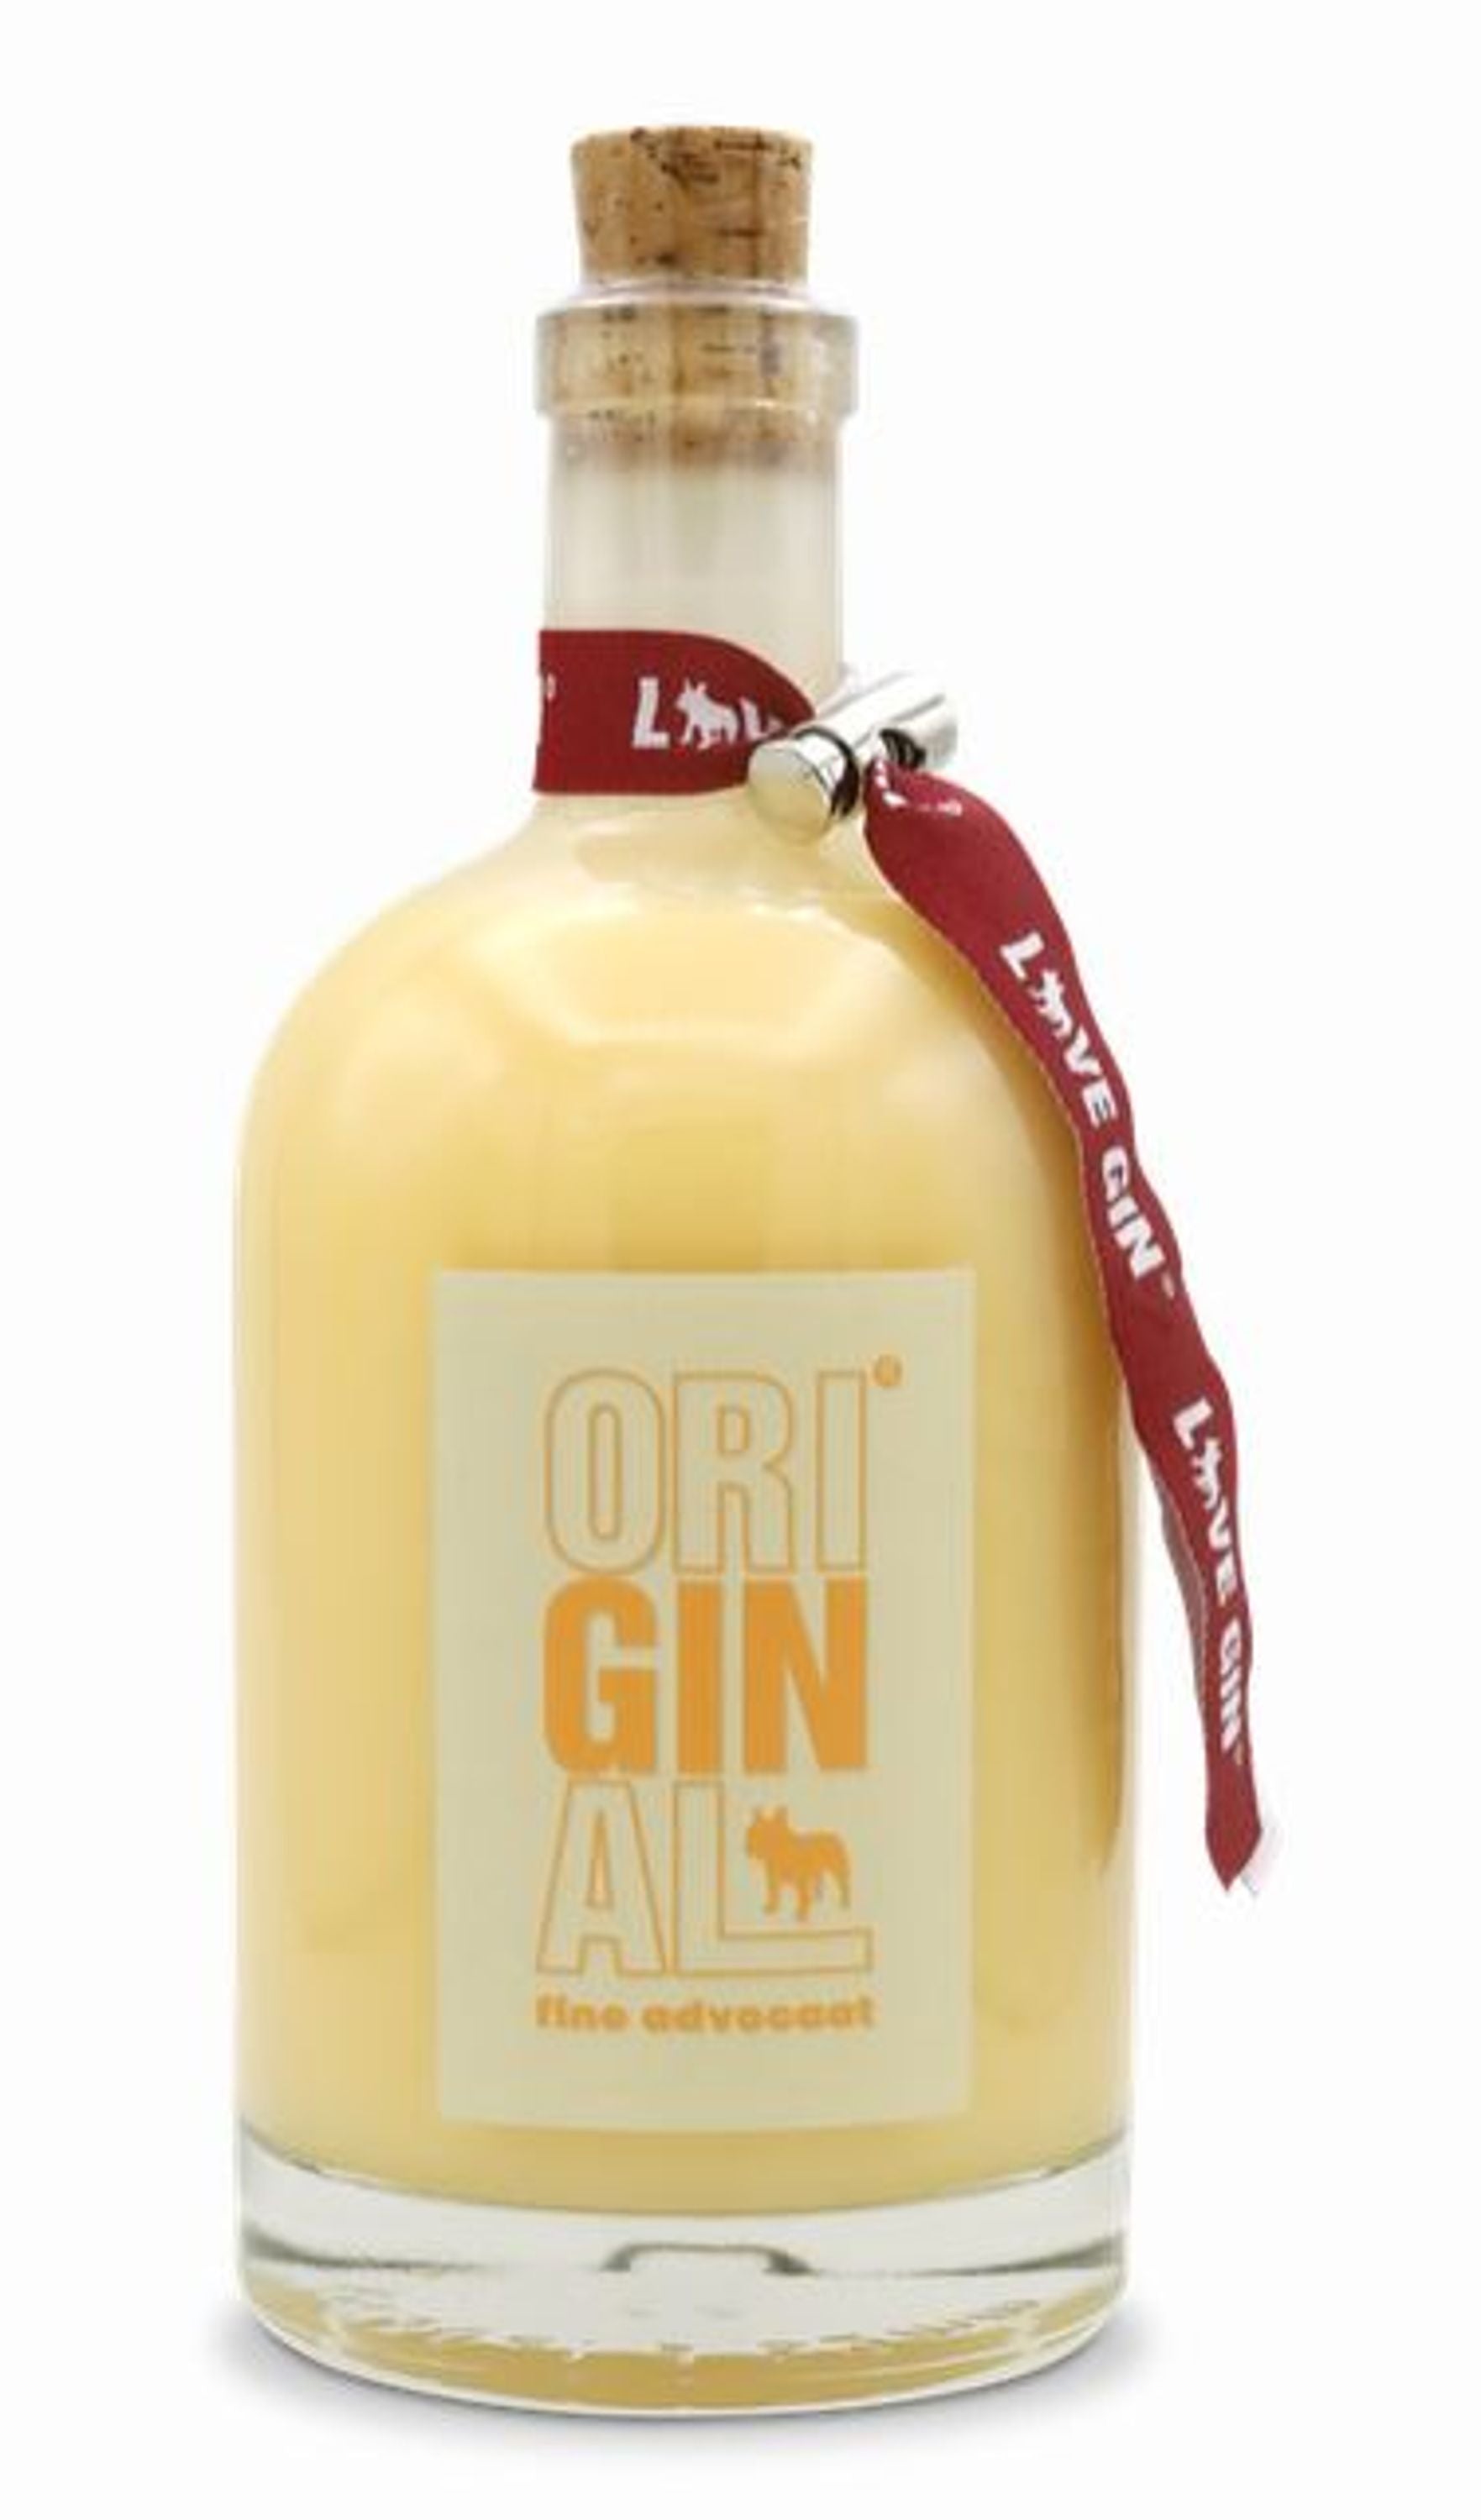 Original Love Gin fine advocaat 0.5l, alc. 22% by volume, eggnog gin Germany